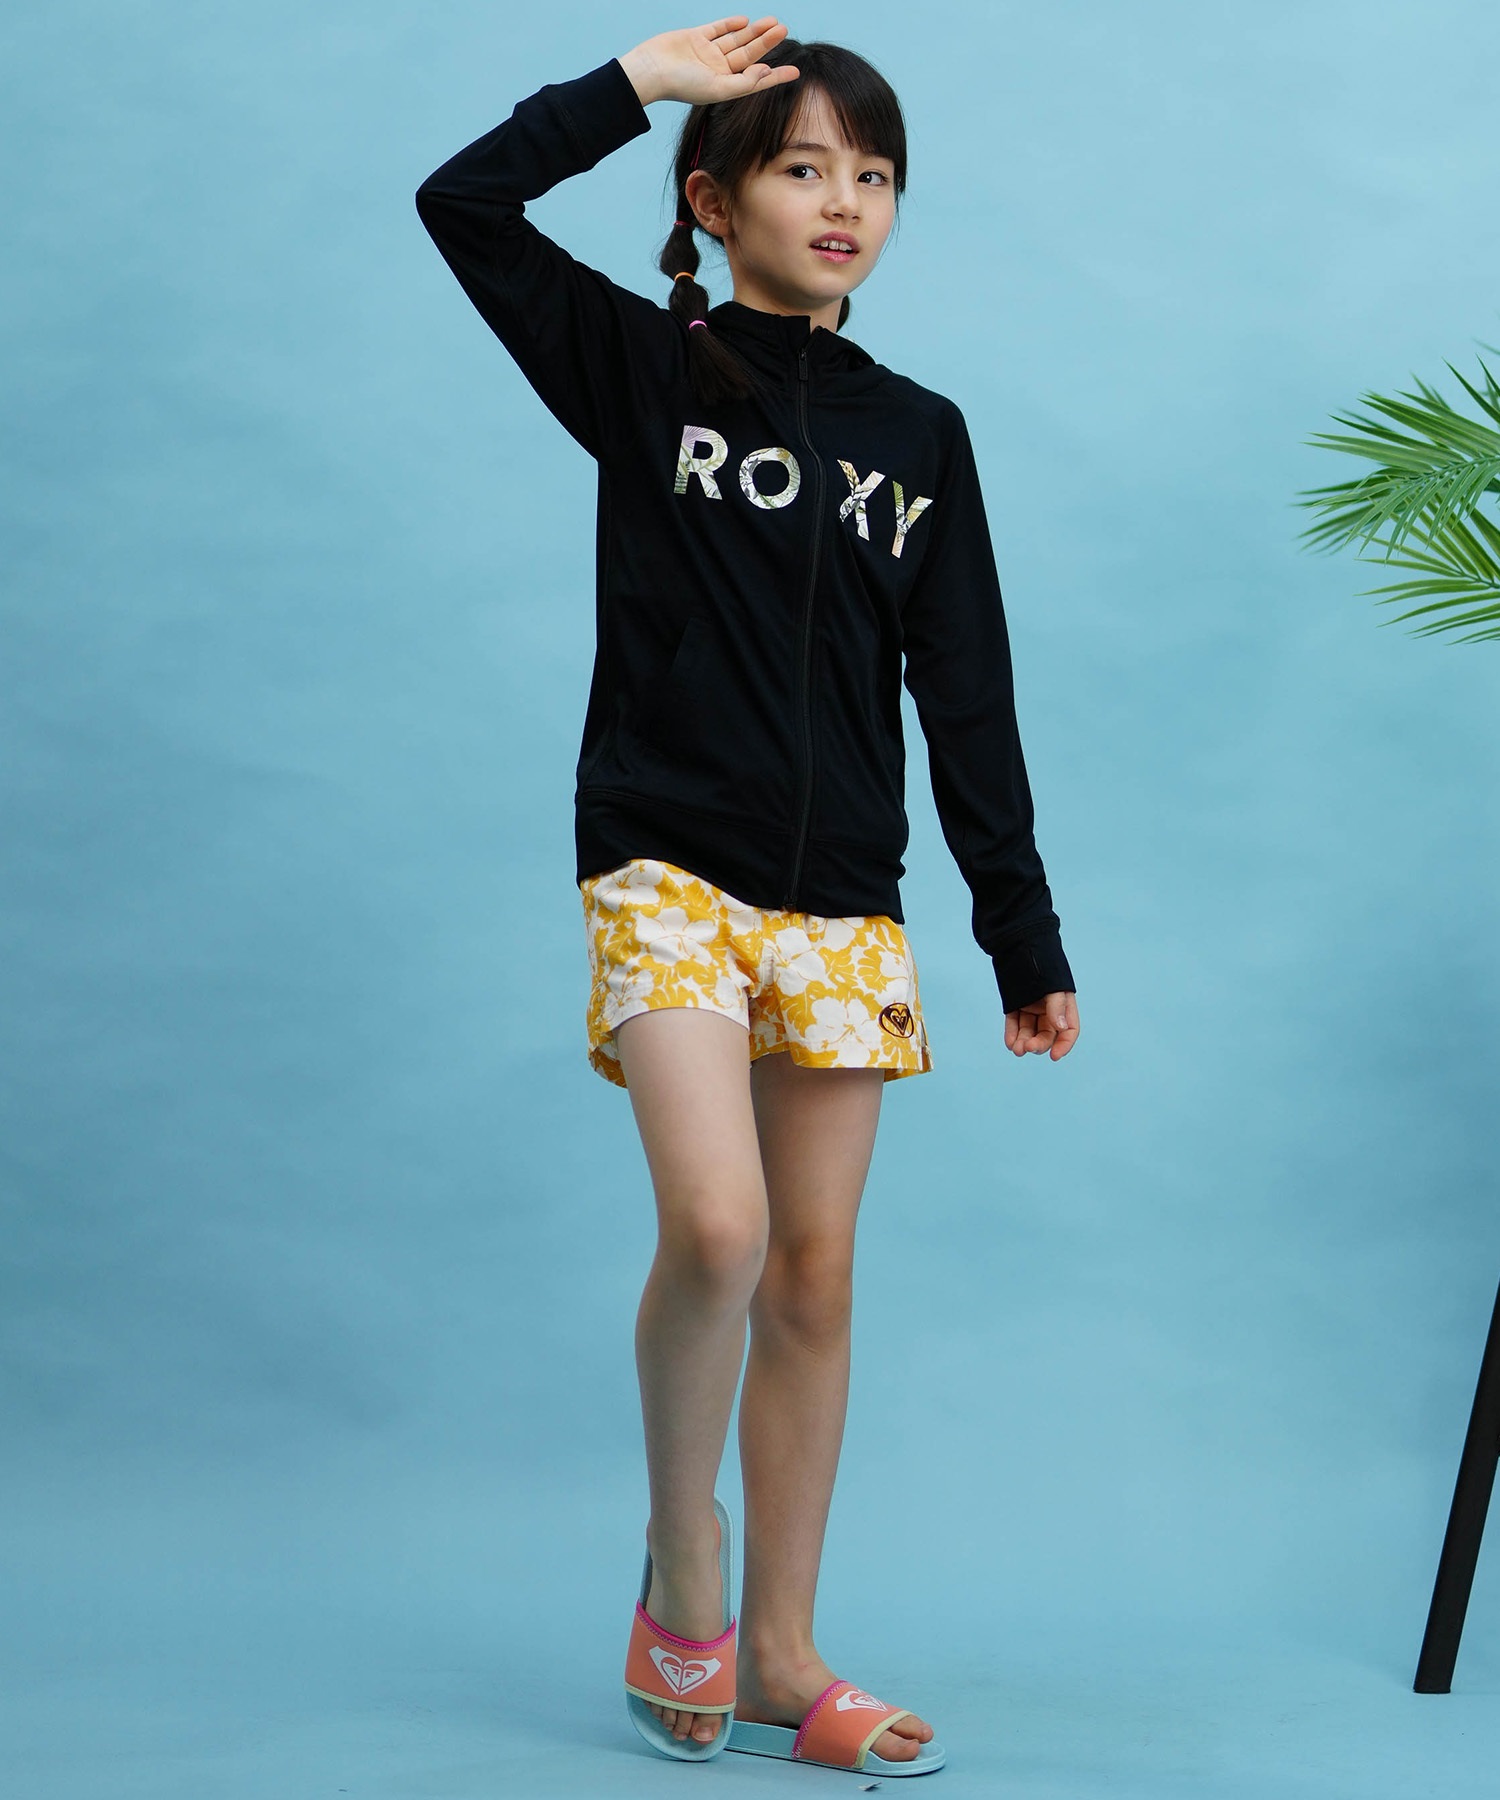 【クーポン対象】ROXY ロキシー キッズ ラッシュガード パーカー ジップアップ 長袖 UVカット TLY241106(WHT-120cm)